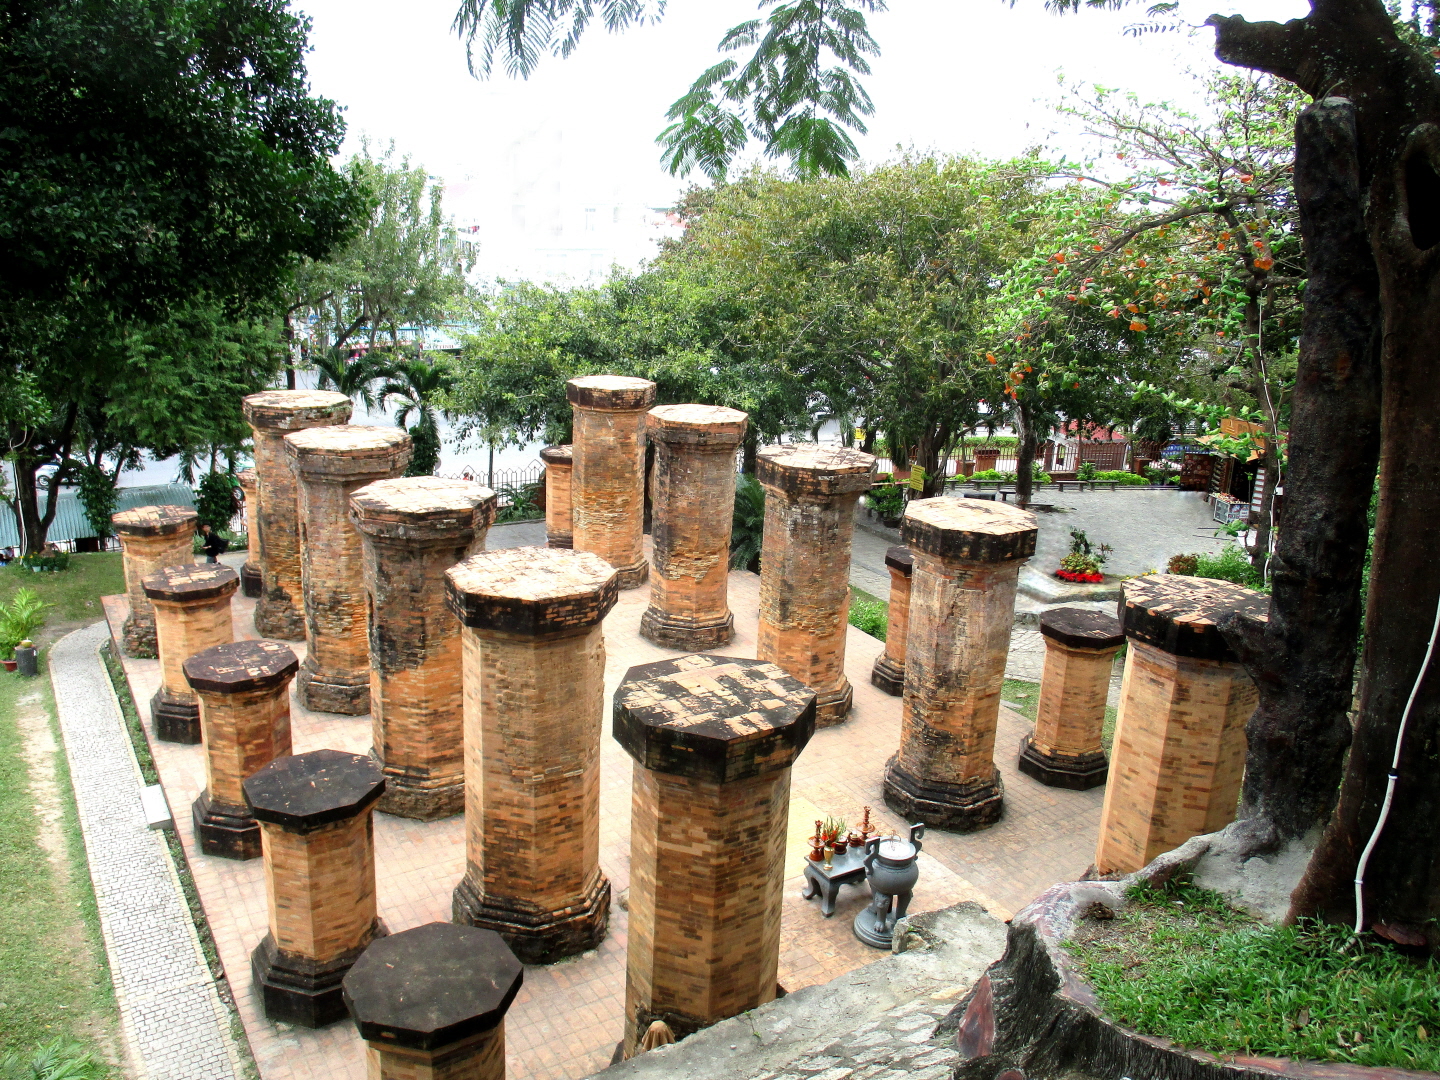 Po Nagar Cham Towers, Nha Trang